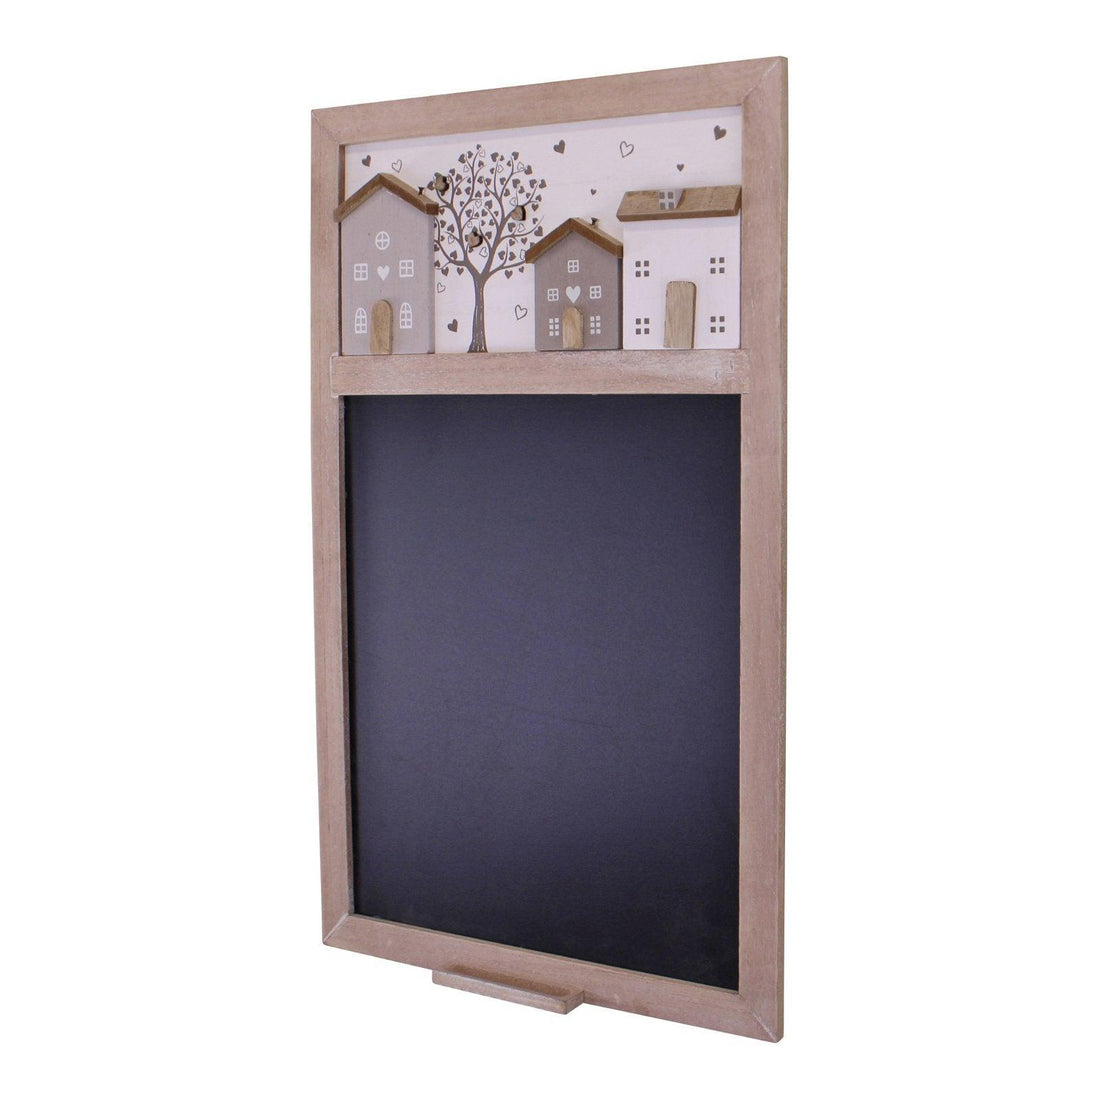 Wall Mounted Blackboard, Wooden Houses Design - £28.99 - Blackboards, Memo Boards & Calendars 